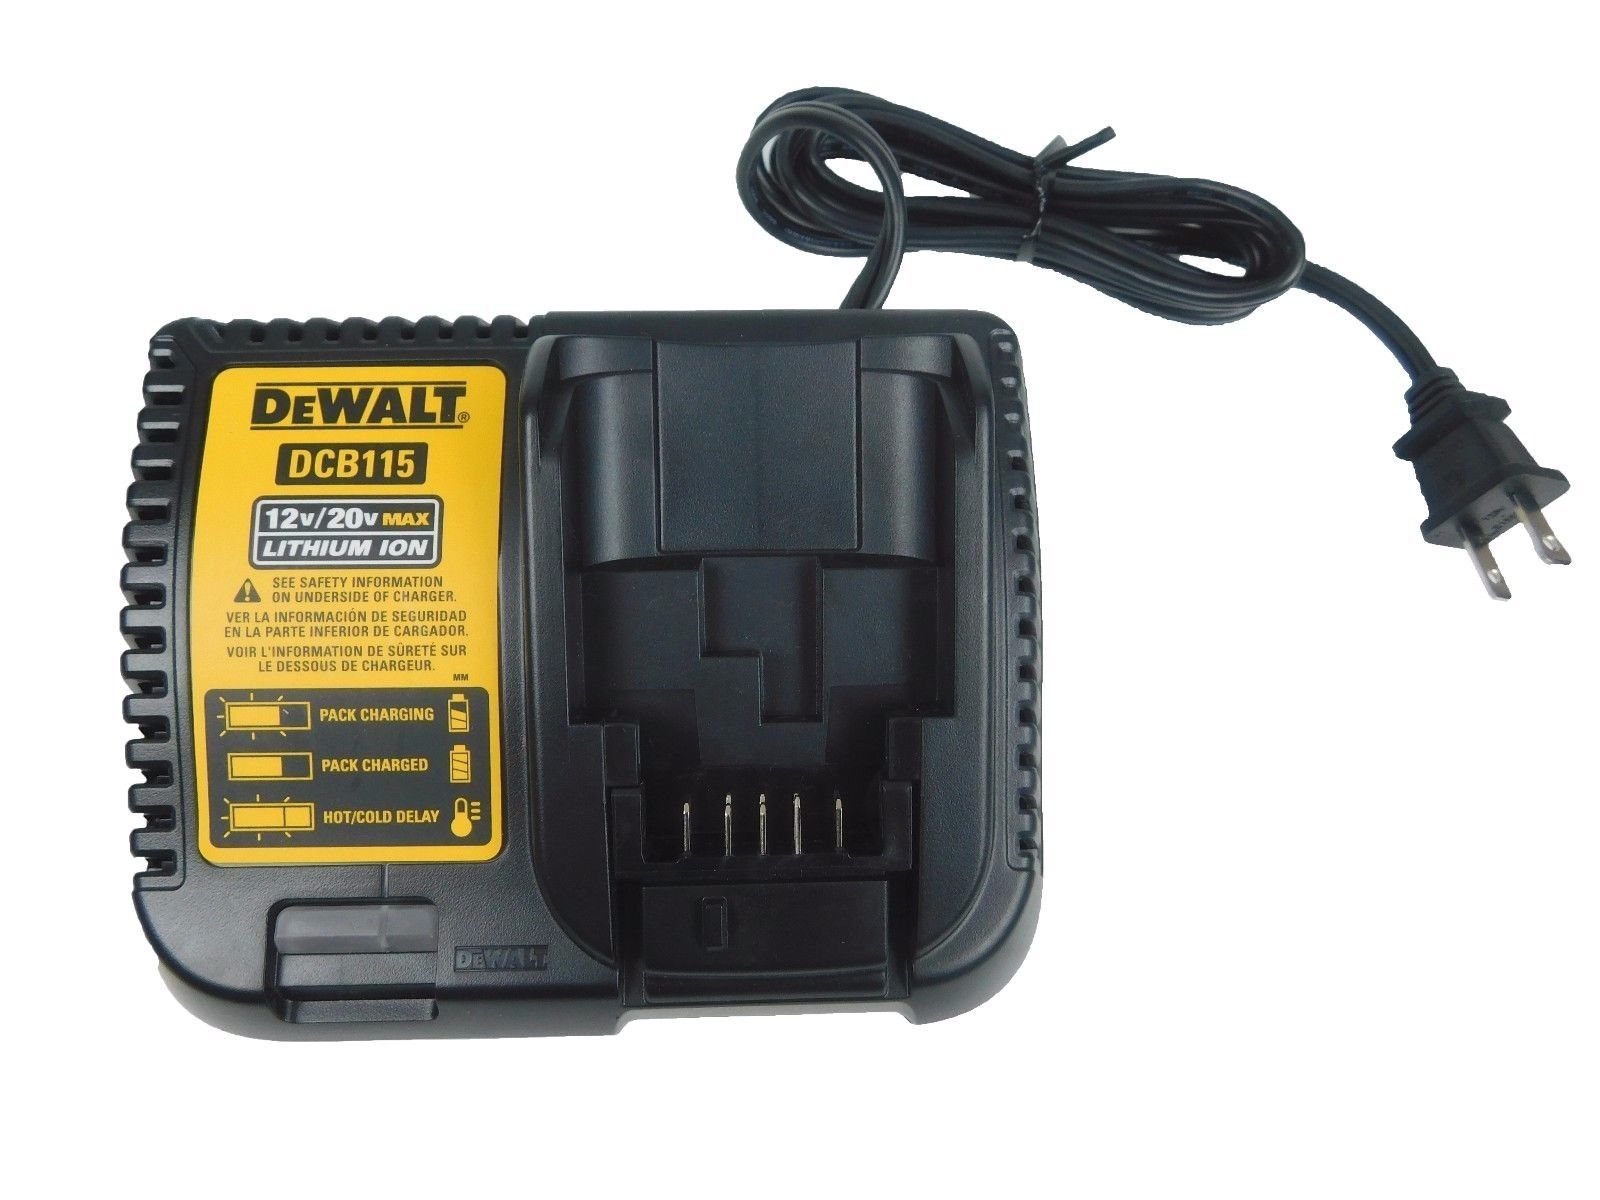 Dewalt-DCB115-10.8V-18V-MAX-Lithium-Ion-Multi-Voltage-Battery-Charger-image-1